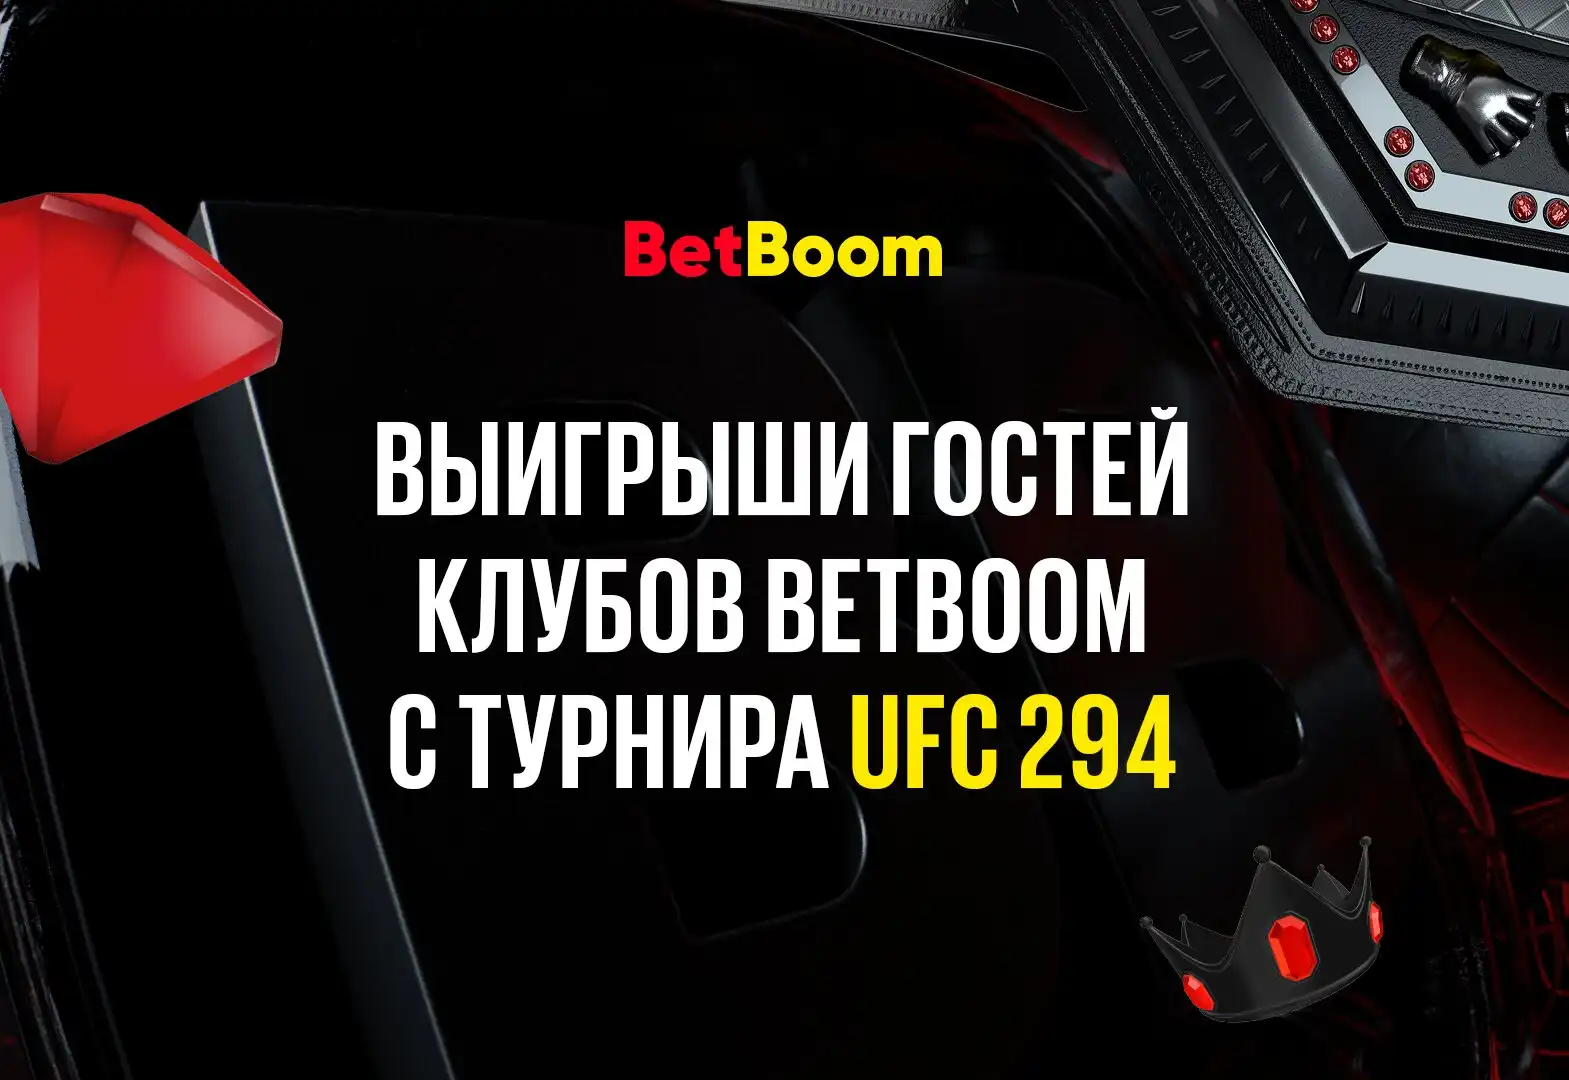 Успешный экспресс с кэфом 121 и другие крупные выигрыши гостей клубов BetBoom, зарядивших на UFC 294!